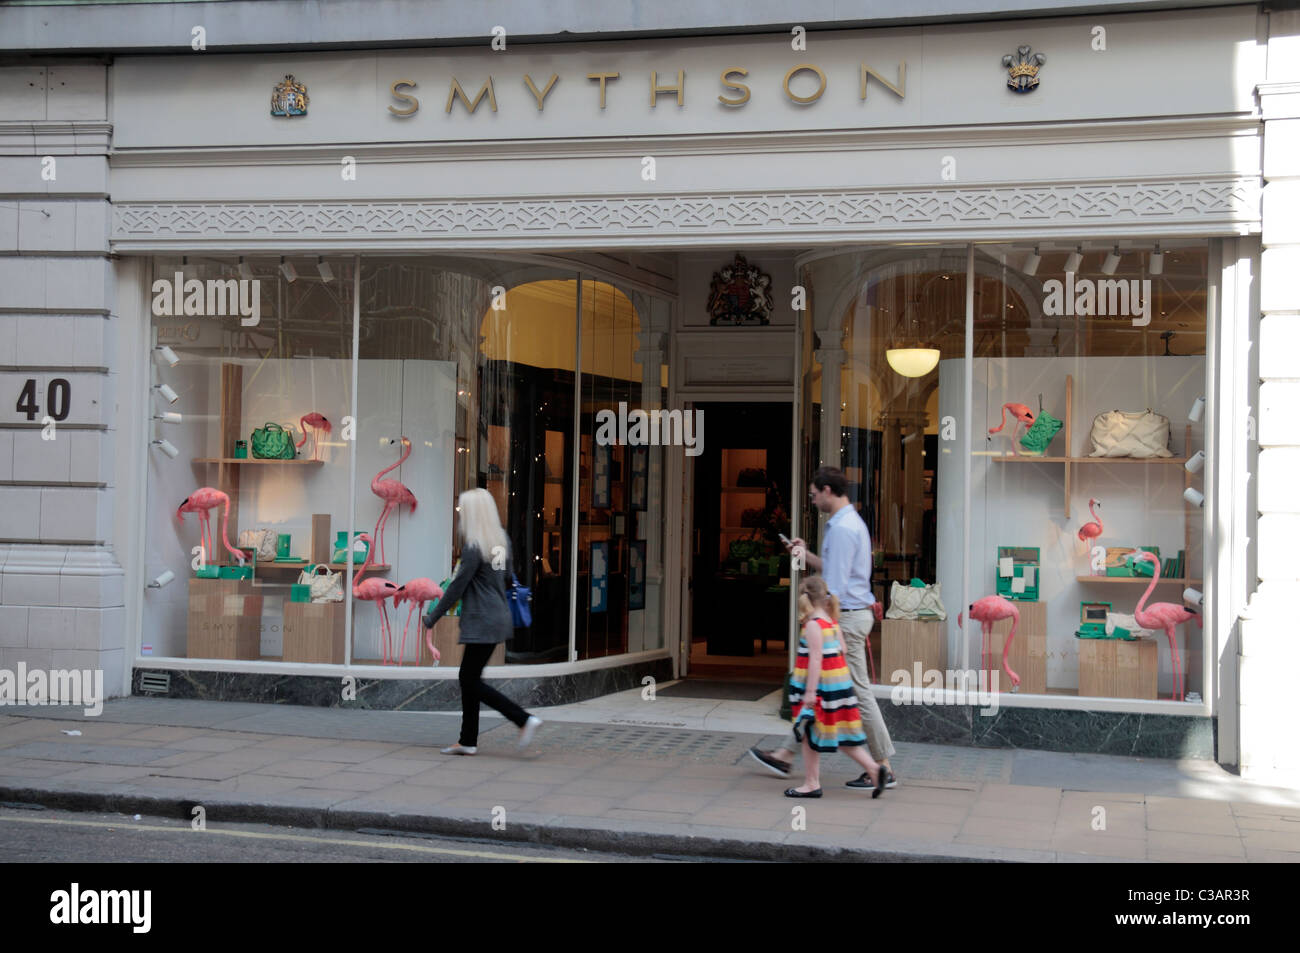 Smythson Luxus Schreibwaren Shop auf New Bond Street, London, UK  Stockfotografie - Alamy